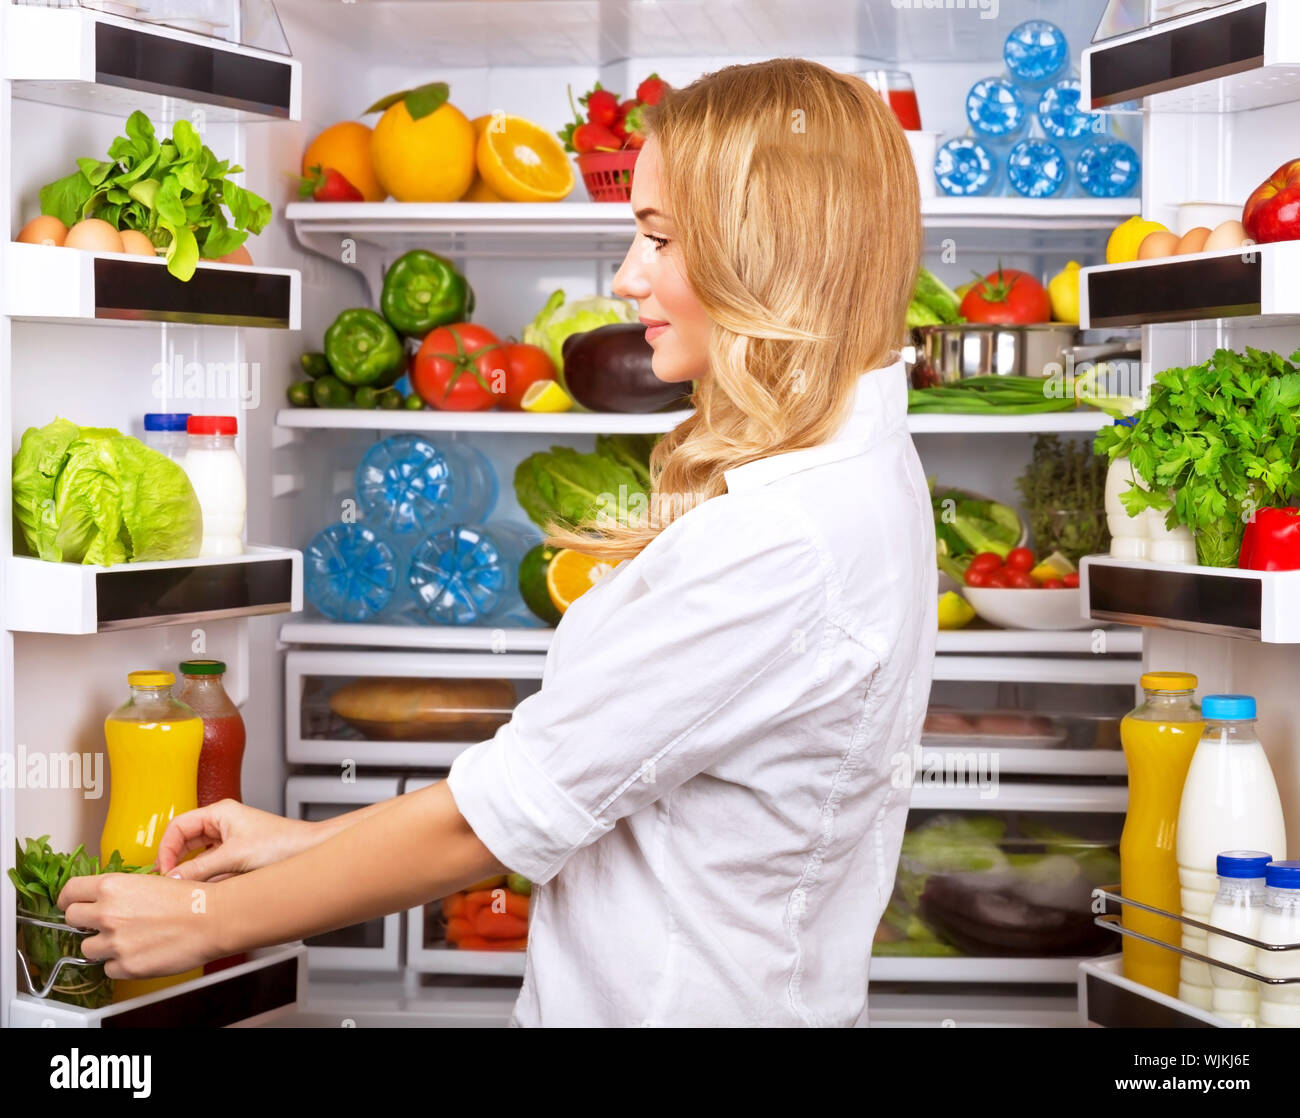 Glücklich weiblich Suche etwas in den Kühlschrank, frisches Obst und Gemüse  im Kühlschrank, Kochen Diät, fit und Körper care Konzept Stockfotografie -  Alamy